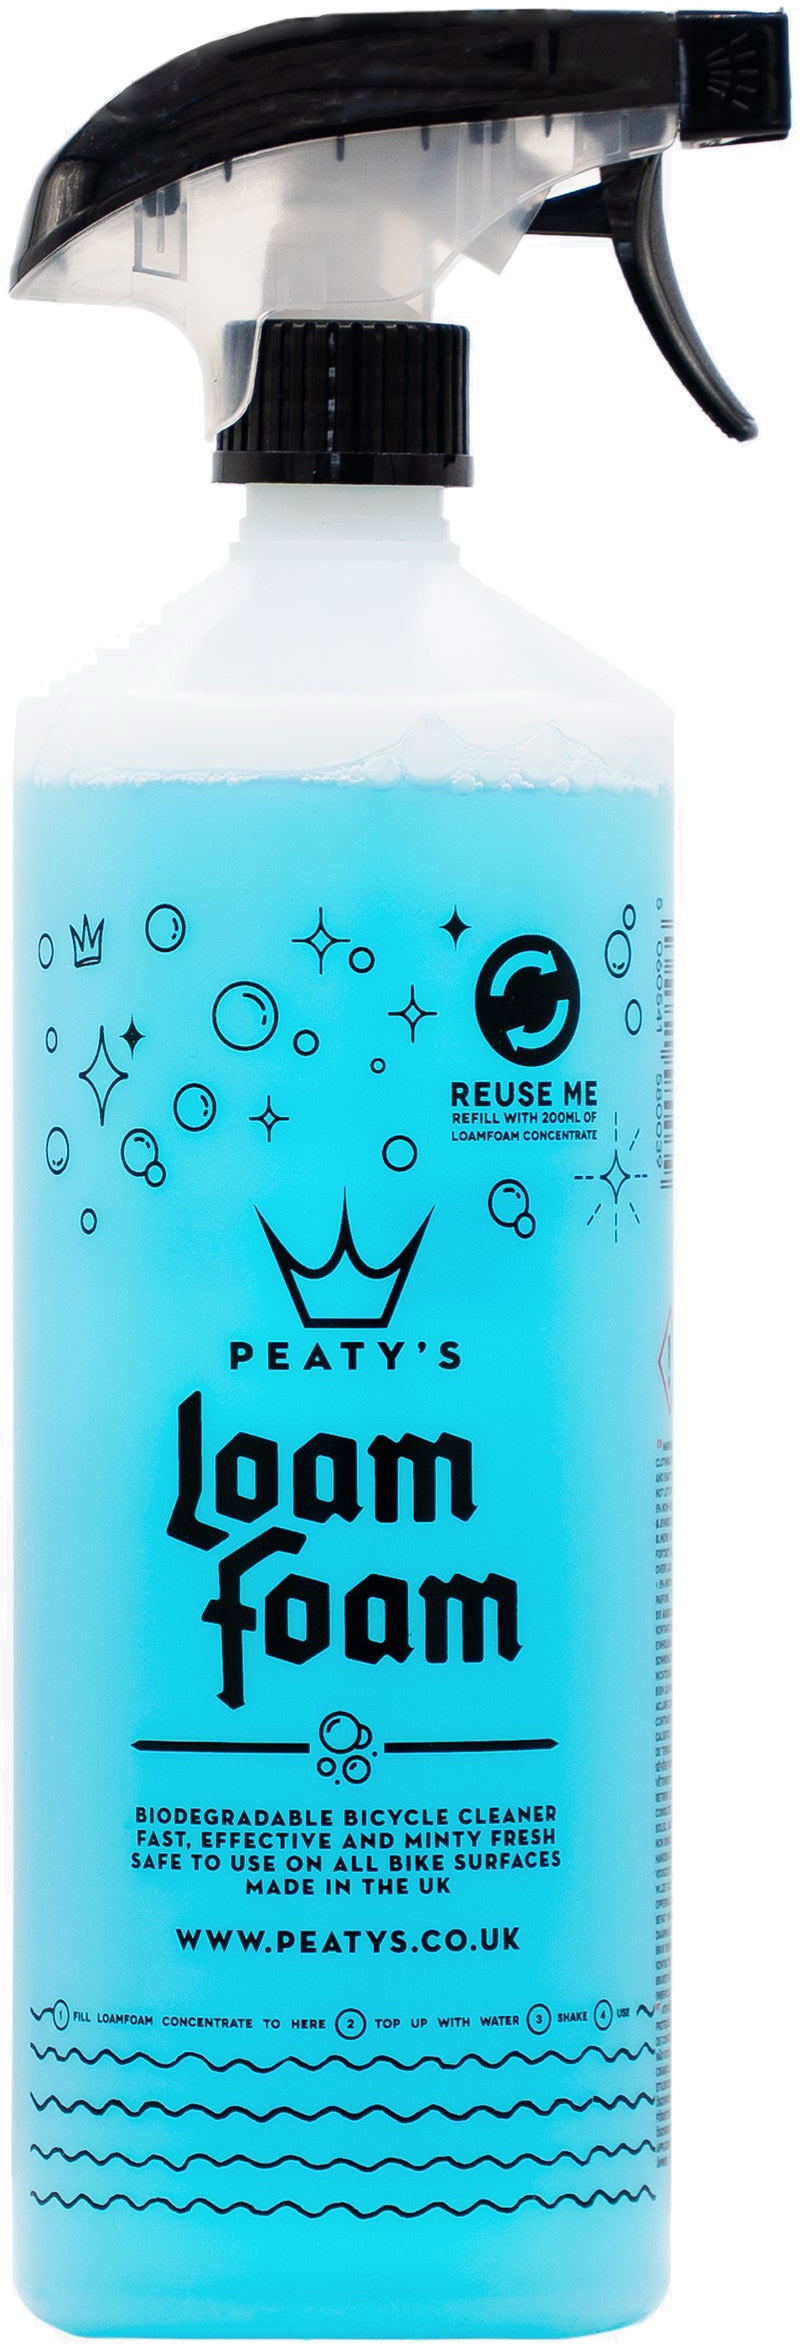 Tilbehør - Cykelpleje - Peaty's LoamFoam Cleaner 1L